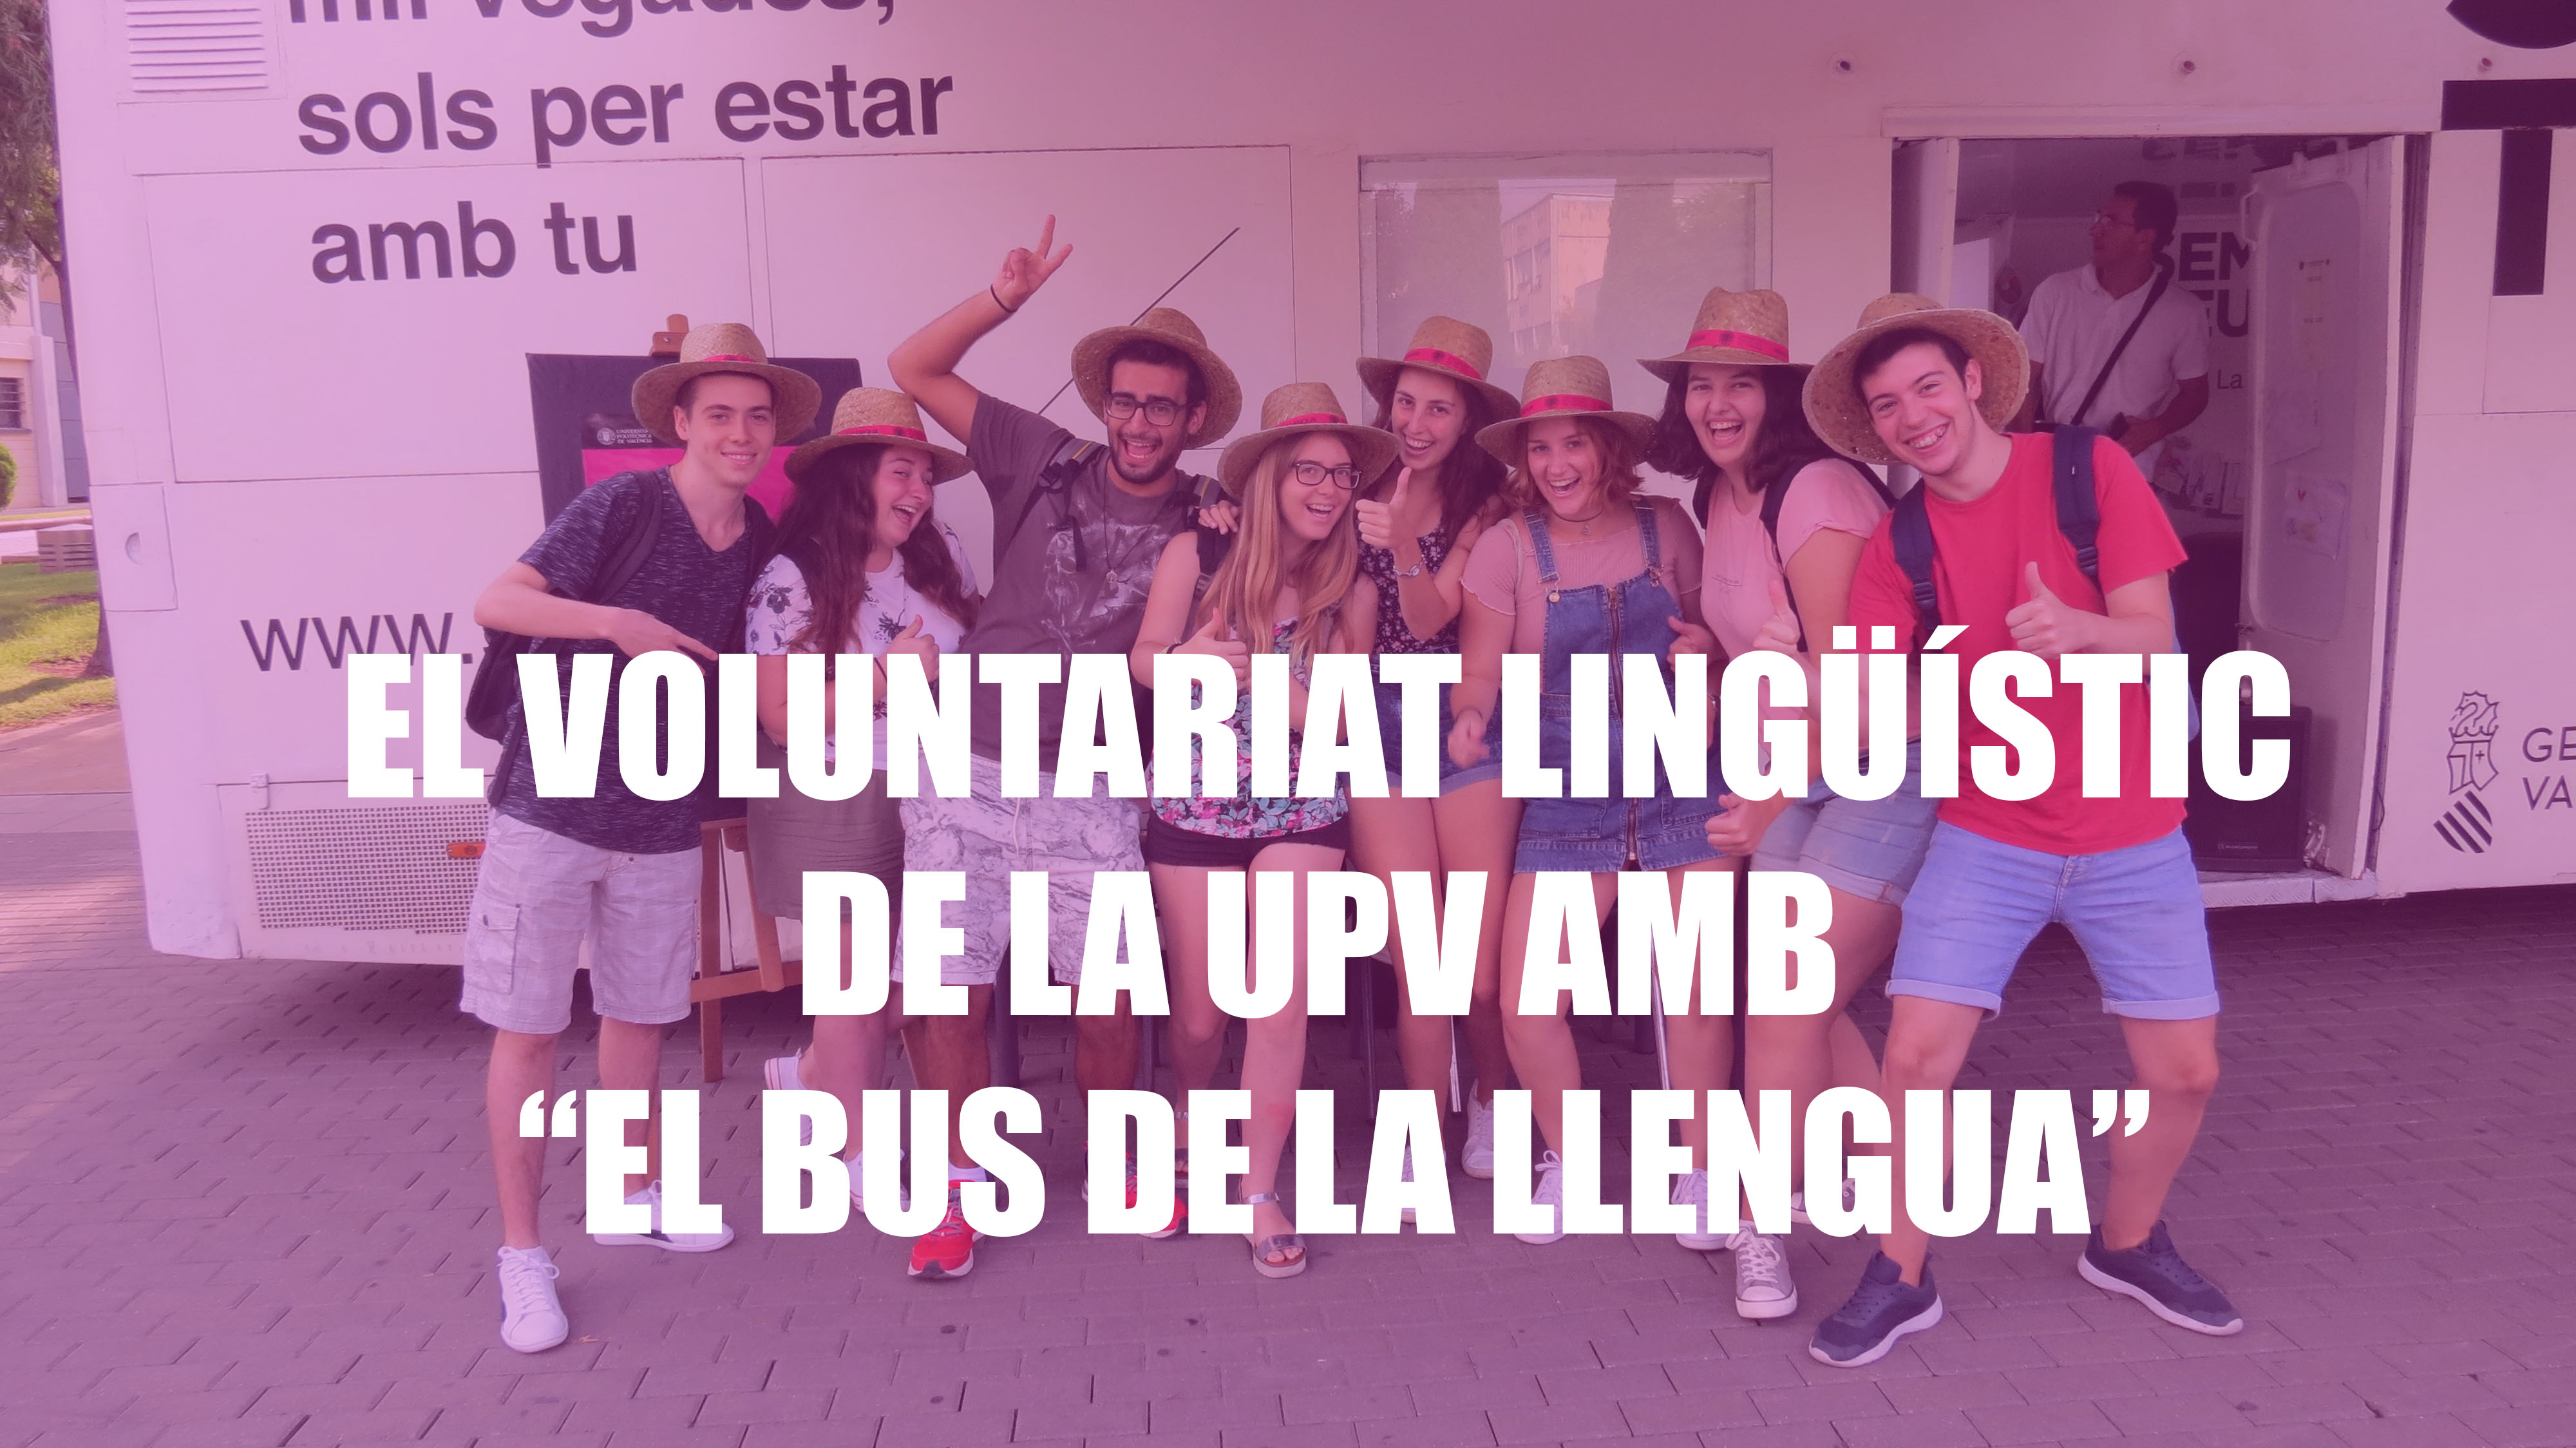 El Voluntariat Lingüístic de la UPV amb el Bus de la llengua